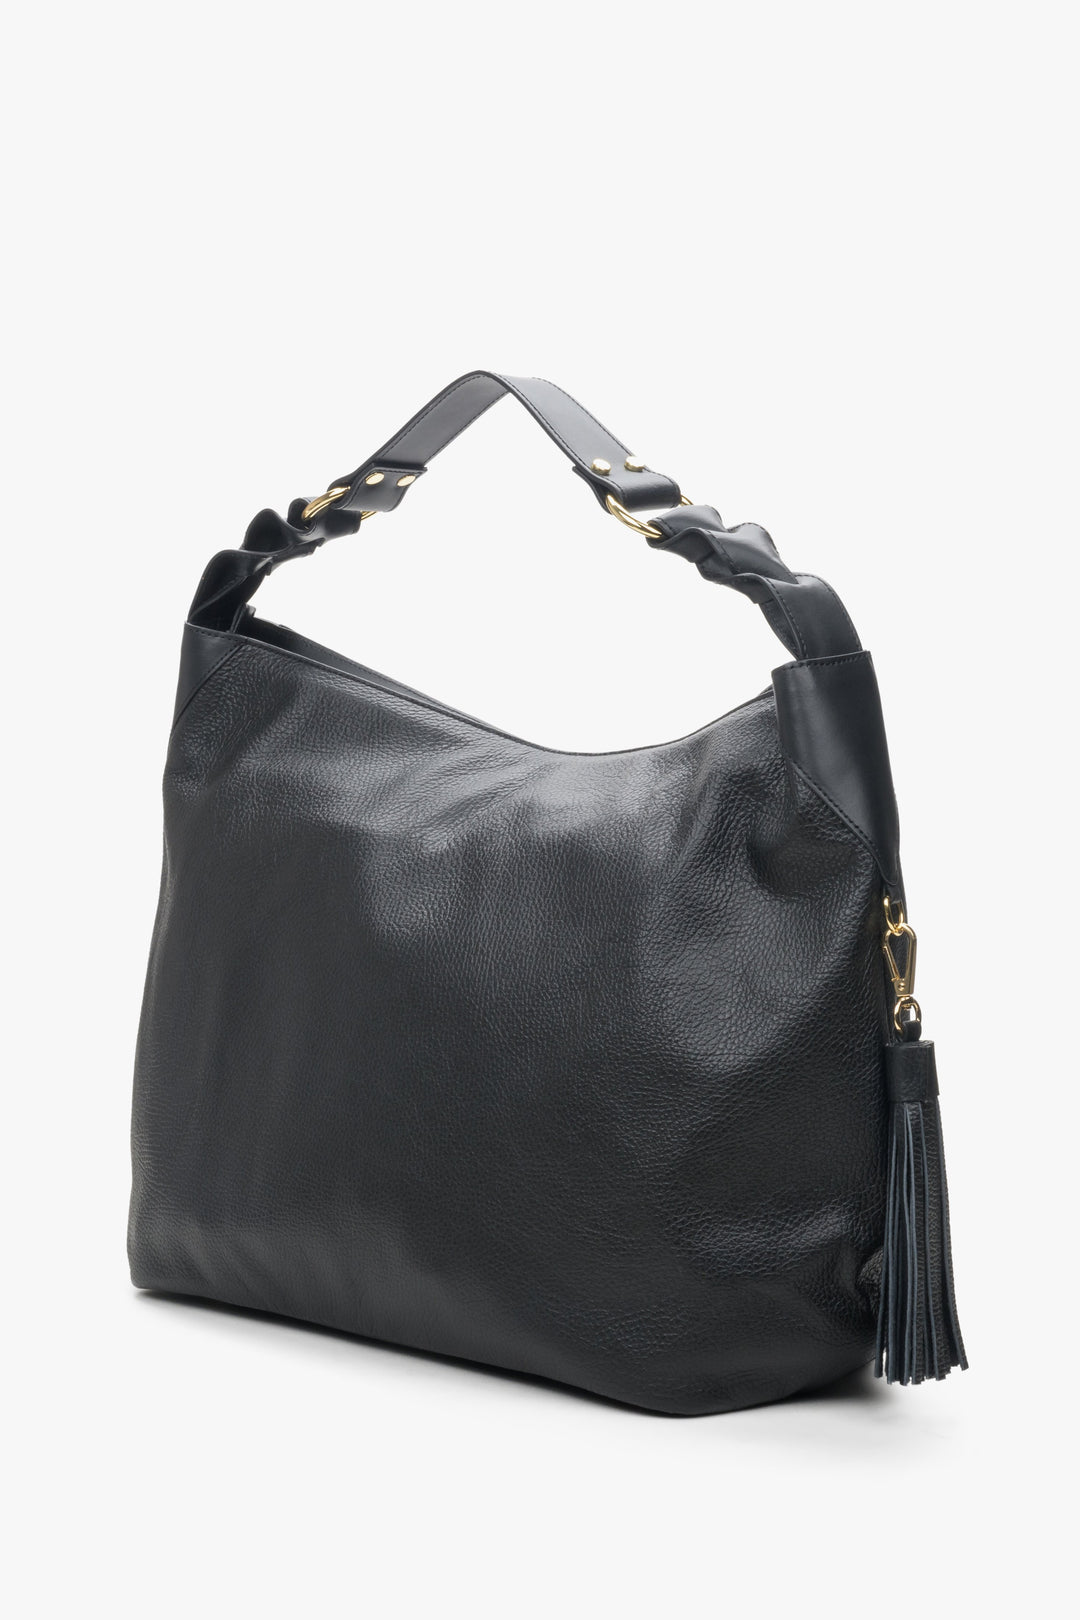 Skórzana torba damska typu hobo w kolorze czarnym Estro.